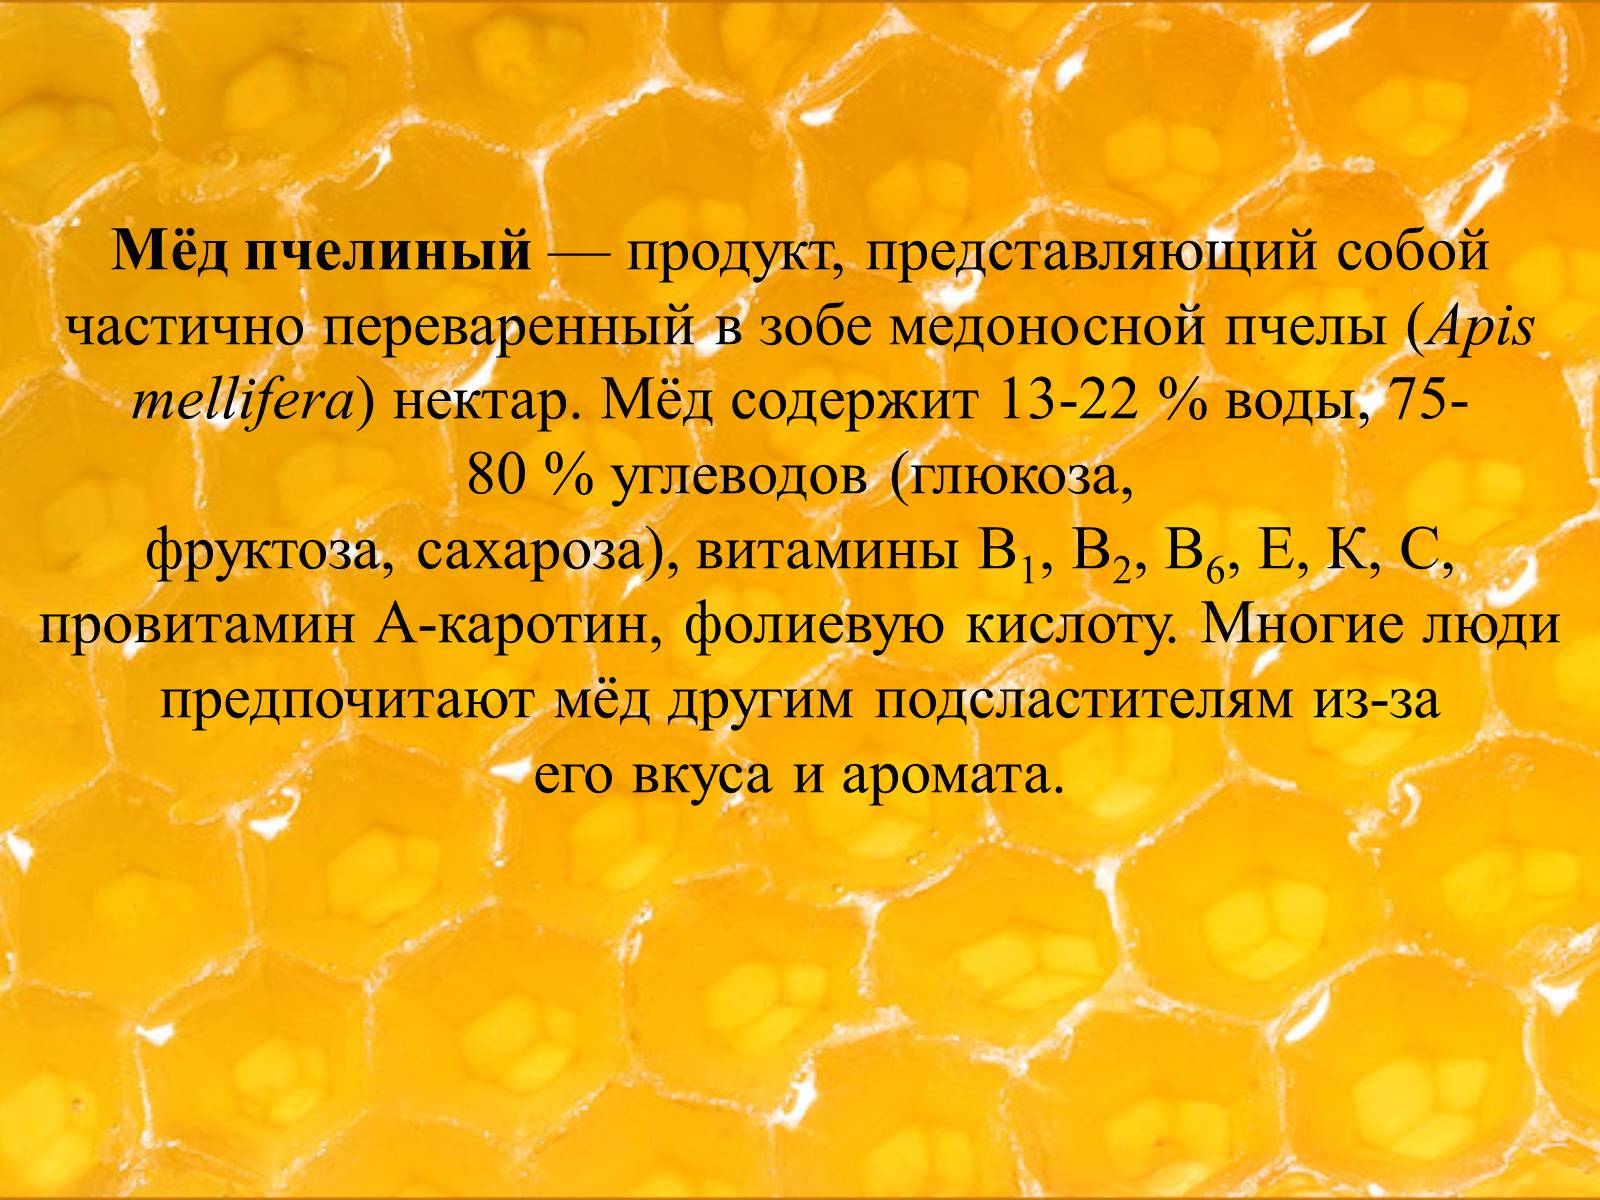 Какие вещества содержатся в меде. Биологическая ценность меда. Продукты пчеловодства. Прнзентация на тему мёд. Сообщение про мед.